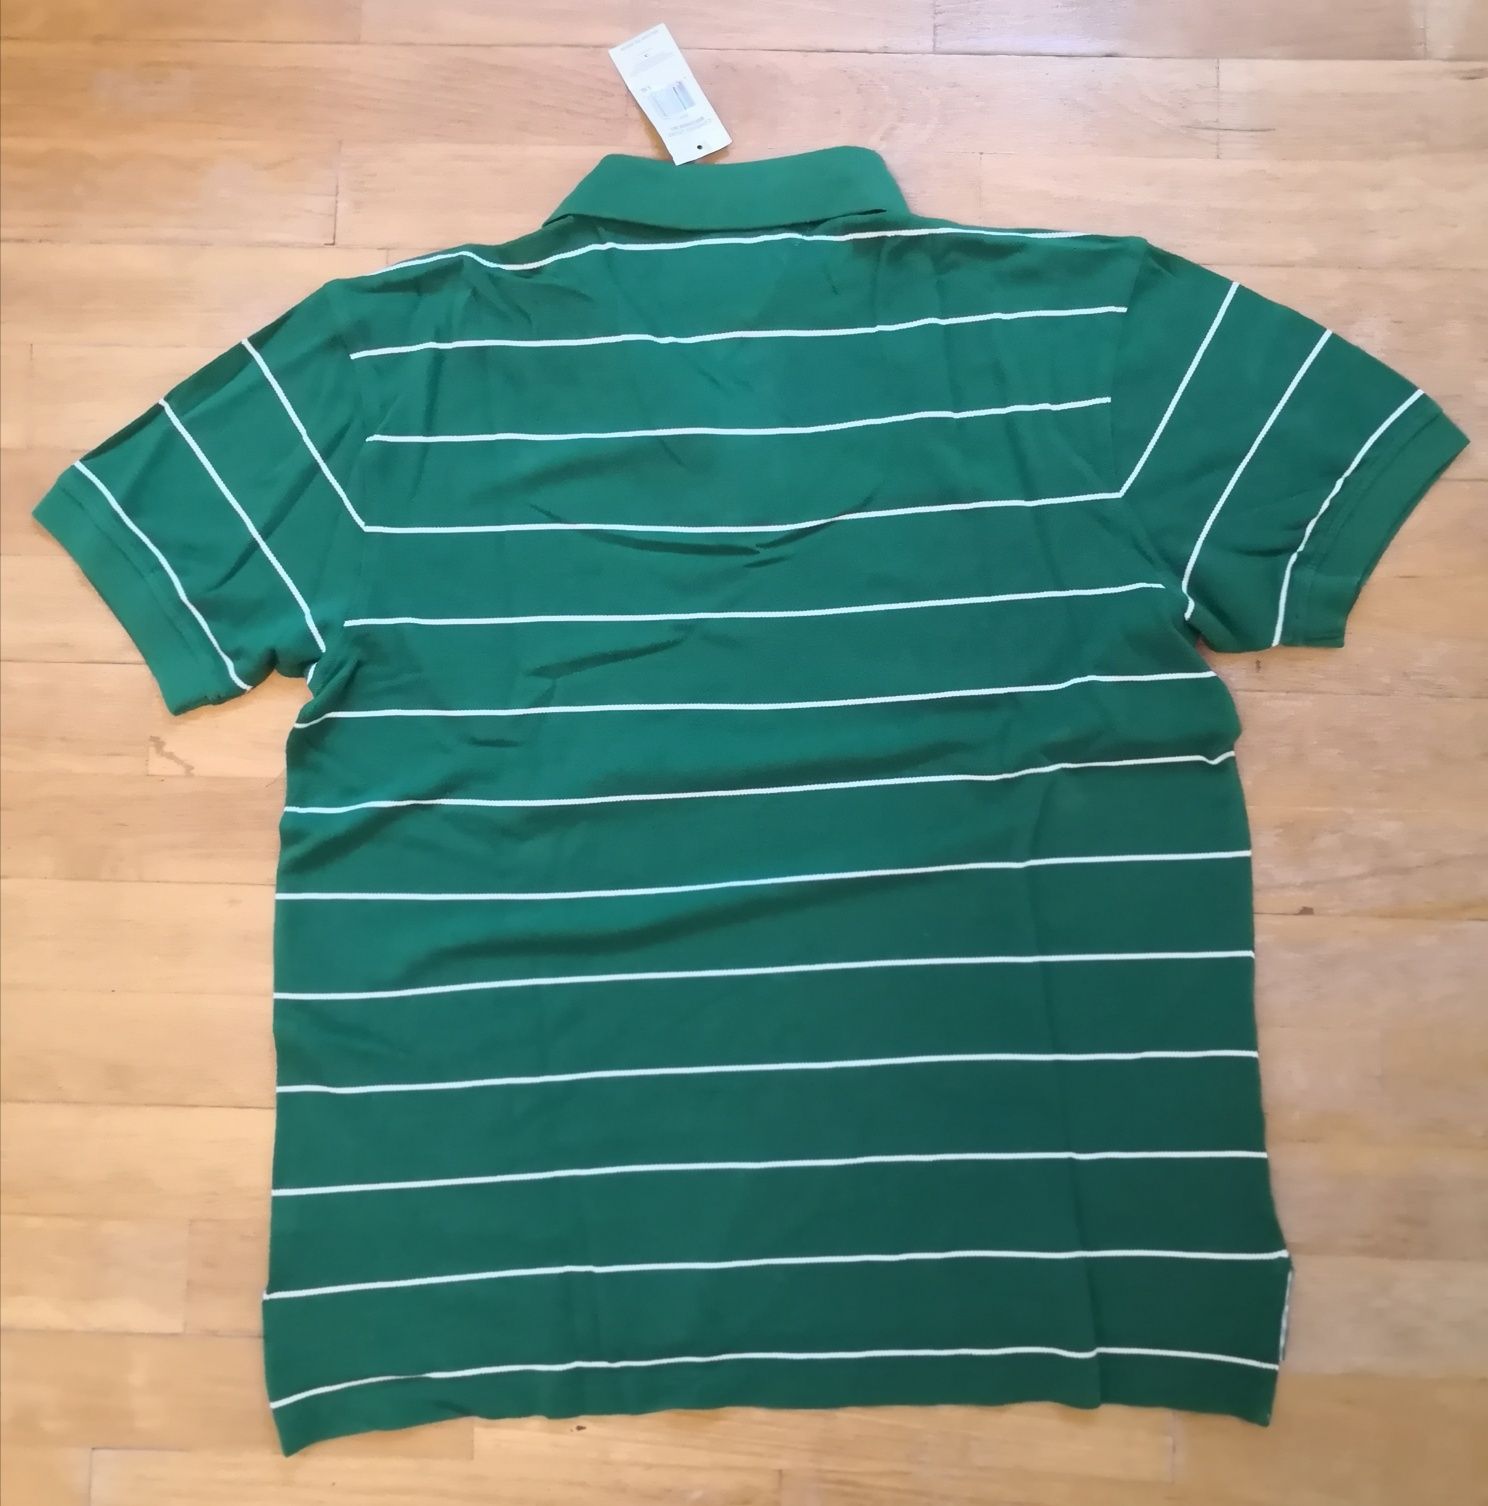 Koszulka Polówka Tommy Hilfiger, Zielona, rozm. L, 100% bawełna, oryg.